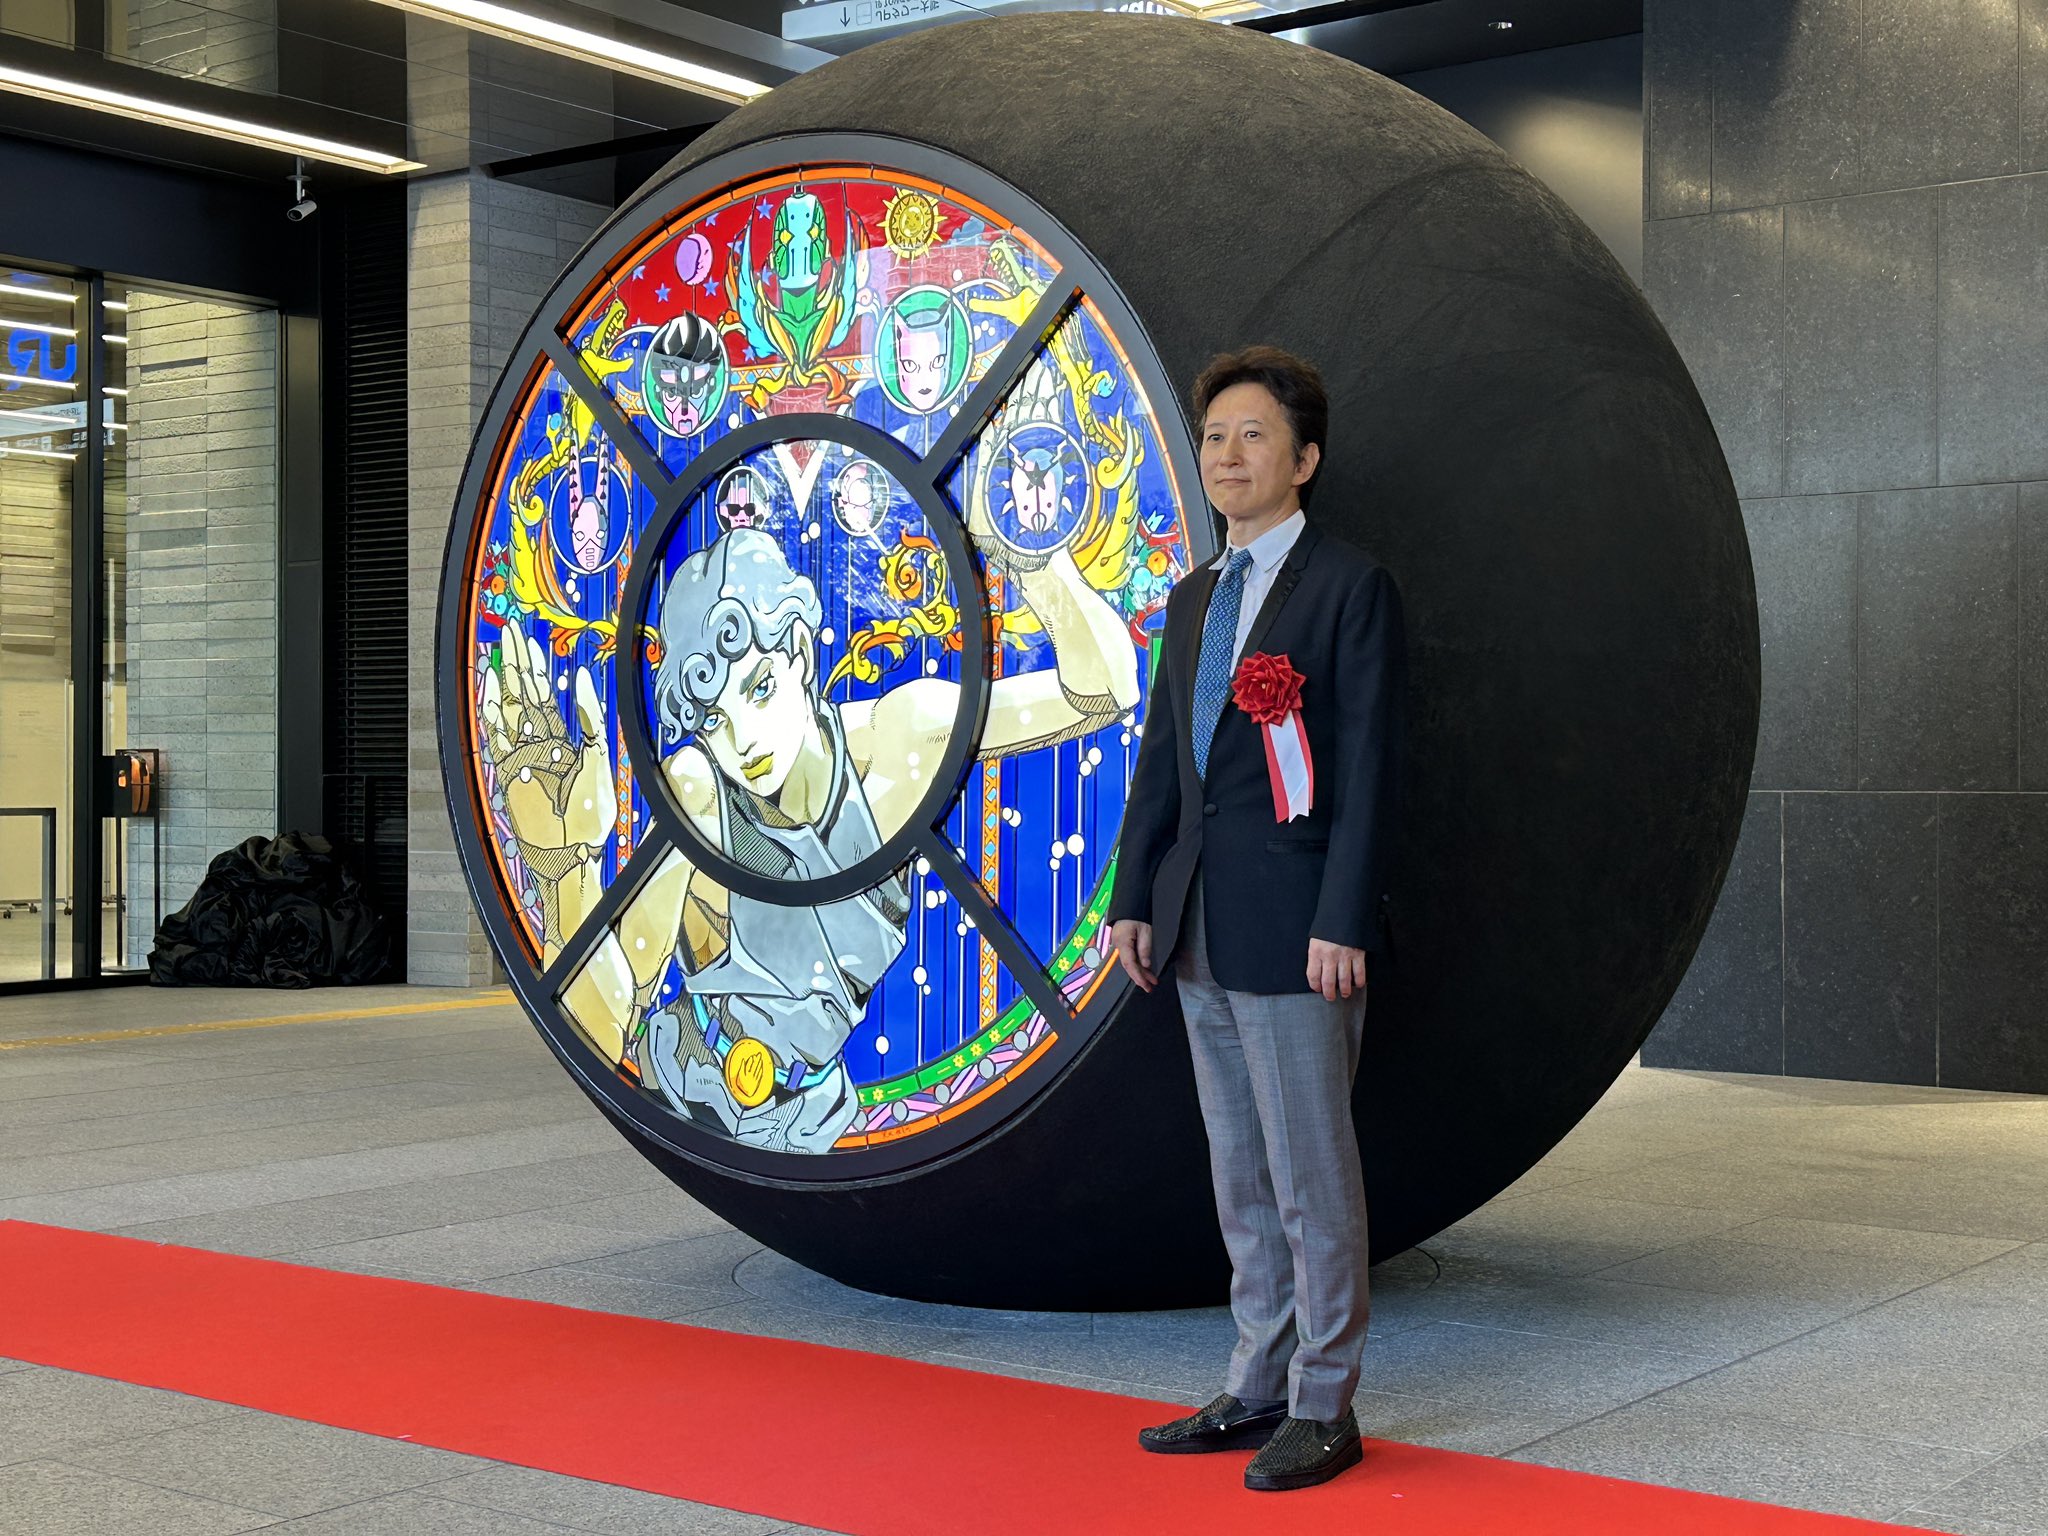 『ジョジョ』荒木飛呂彦先生のパブリックアート作品が大阪駅に登場！沢山のスタンドに「オタク名所が増えた」